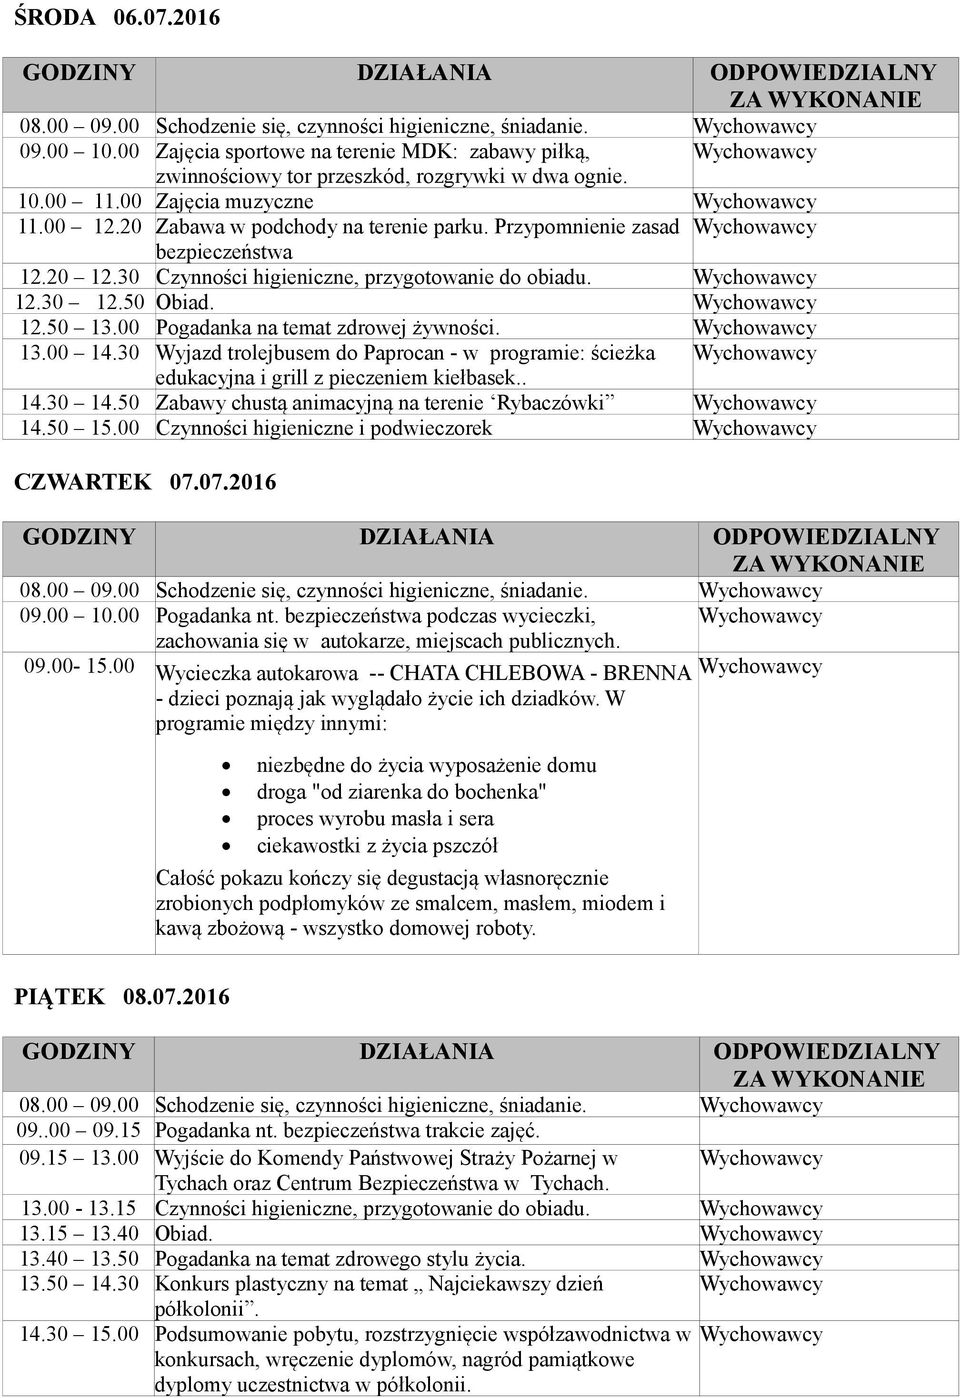 00 Pogadanka na temat zdrowej żywności. 13.00 14.30 Wyjazd trolejbusem do Paprocan - w programie: ścieżka edukacyjna i grill z pieczeniem kiełbasek.. 14.30 14.